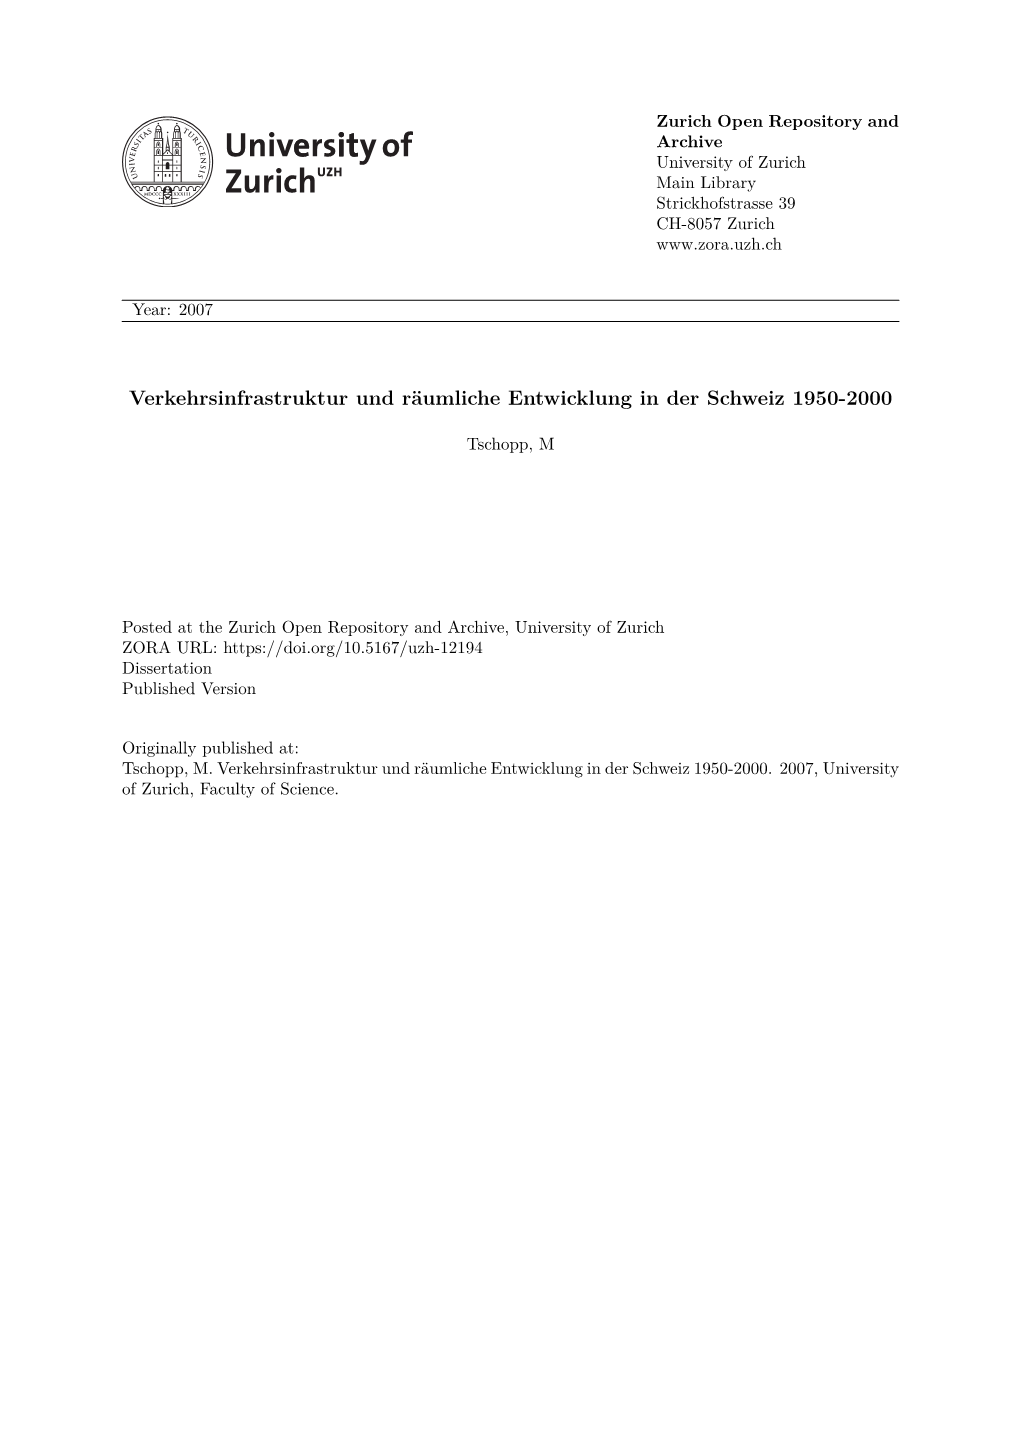 Verkehrsinfrastruktur Und Räumliche Entwicklung in Der Schweiz 1950-2000